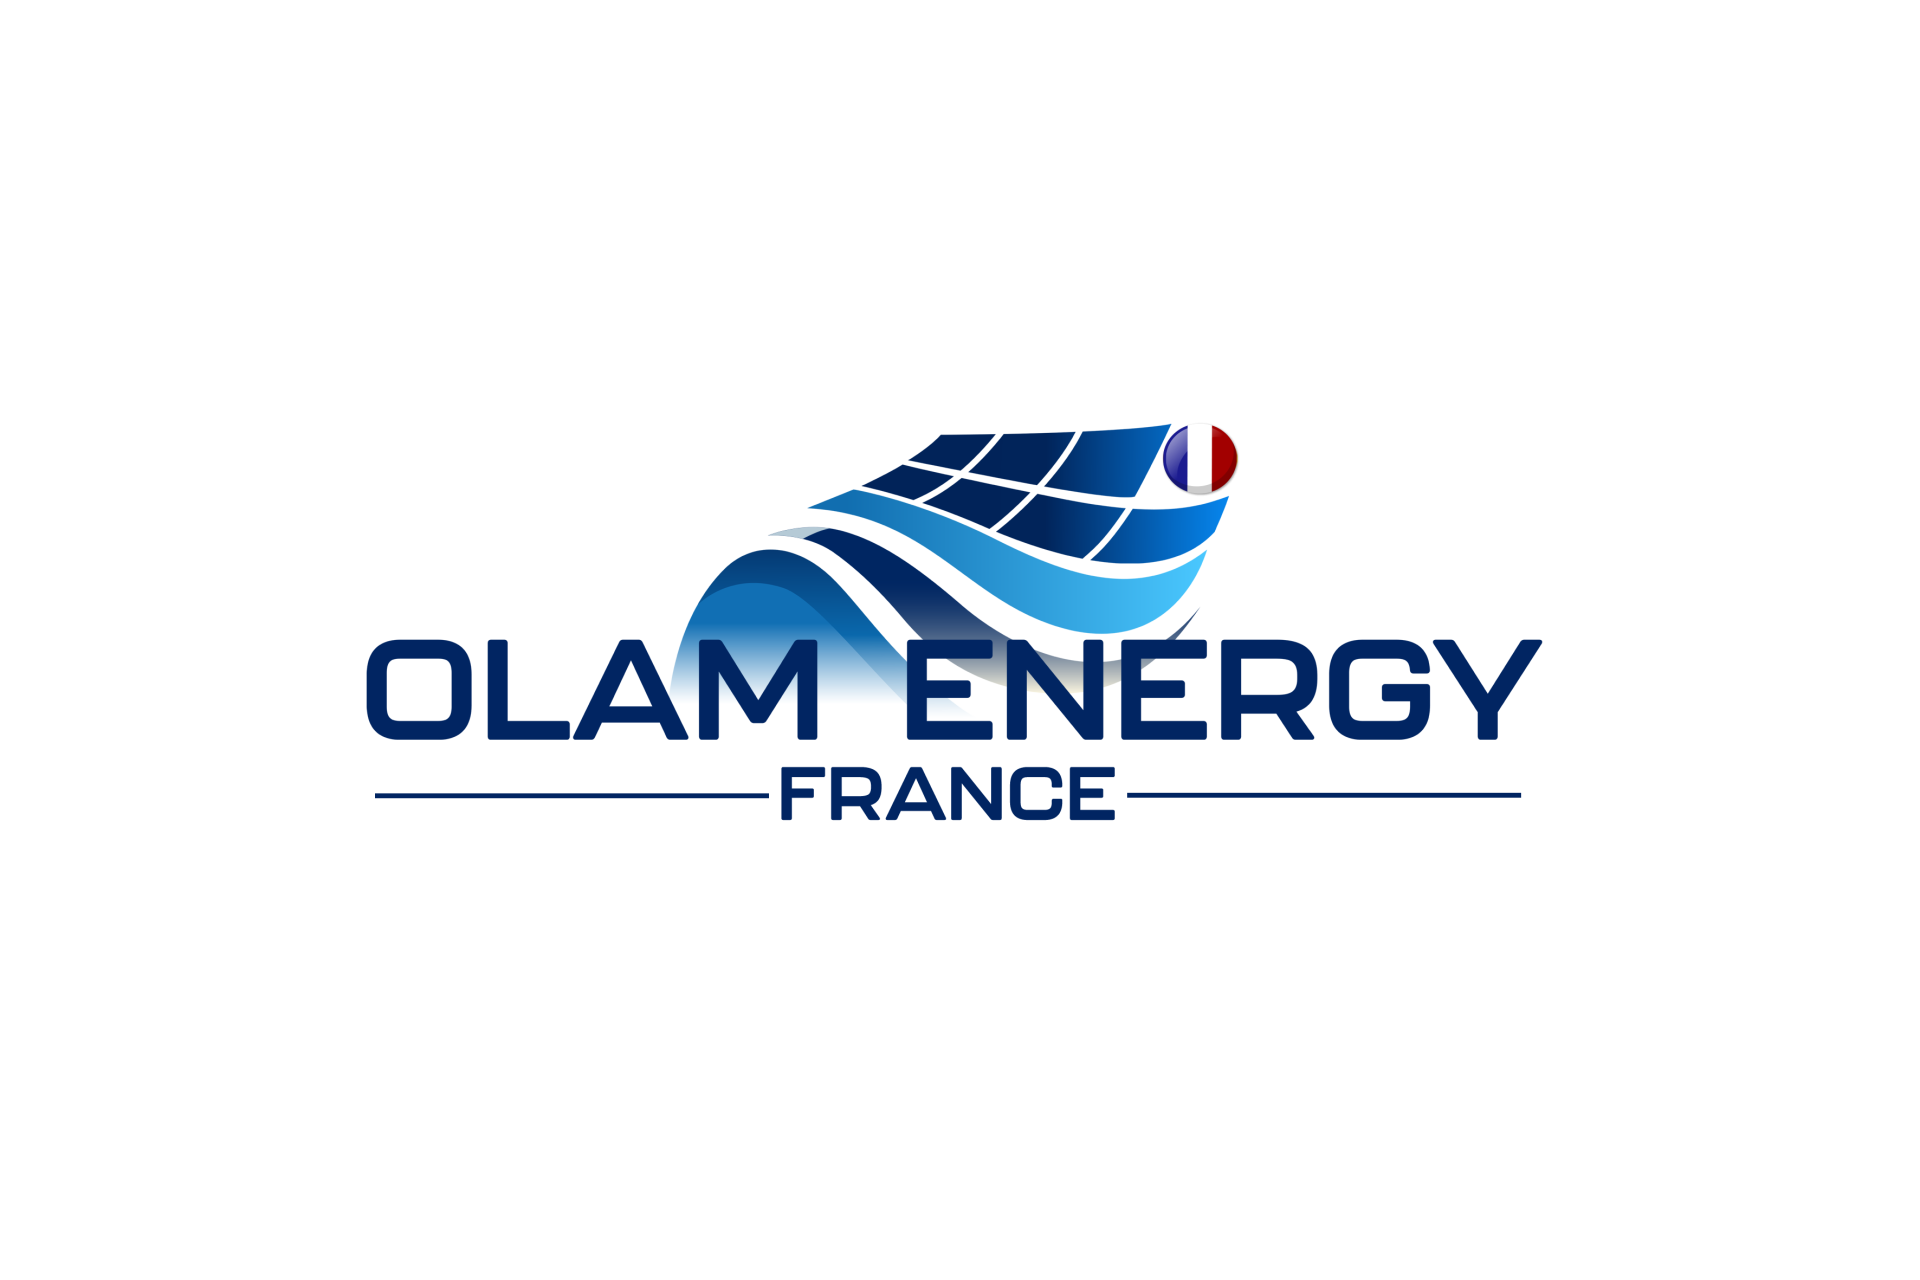 OLAM ENERGY FRANCE